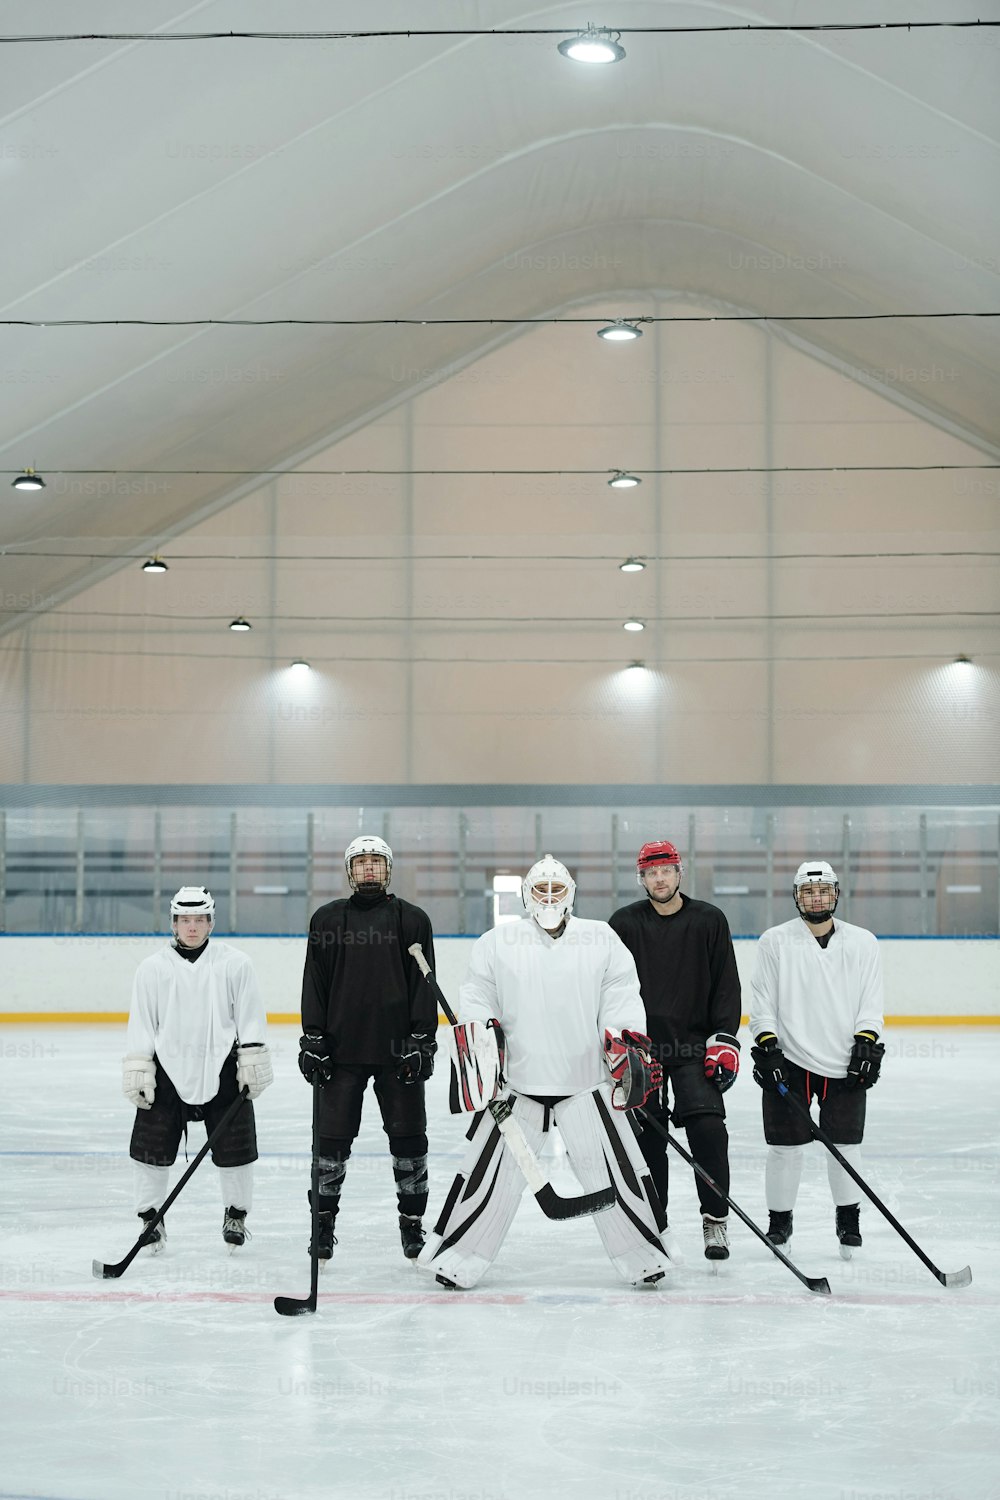 Gruppo di giocatori di hockey e il loro allenatore in uniforme sportiva, guanti, pattini e caschi protettivi in piedi sulla pista di pattinaggio in attesa del gioco